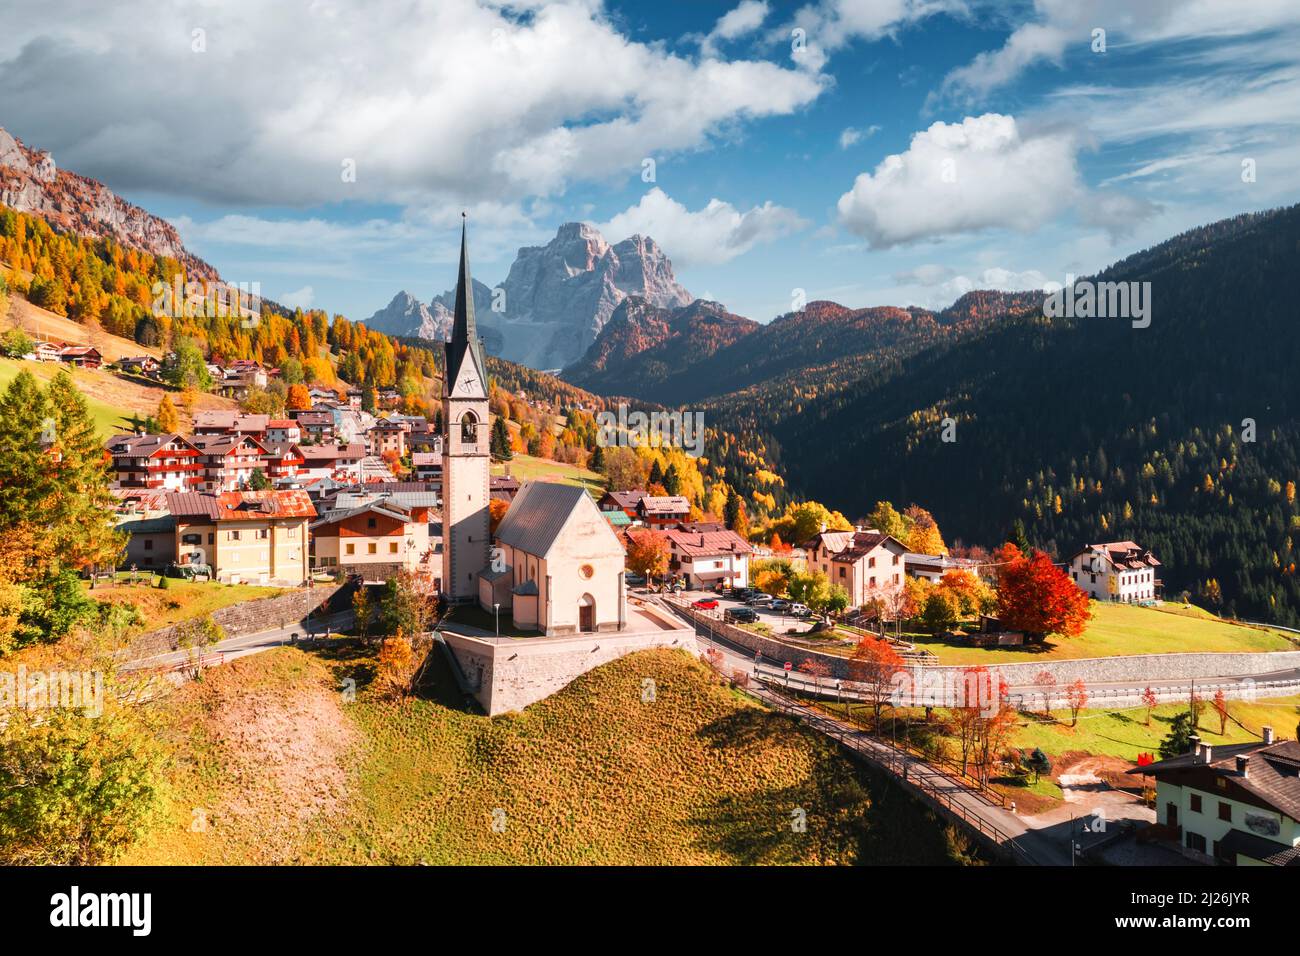 Drohnenflug über die katholische Kirche von San Lorenzo im Dorf Selva di Cadore. Schöne kleine Stadt im Herbst Dolomiten Berge. Dolomiten, Pr Stockfoto